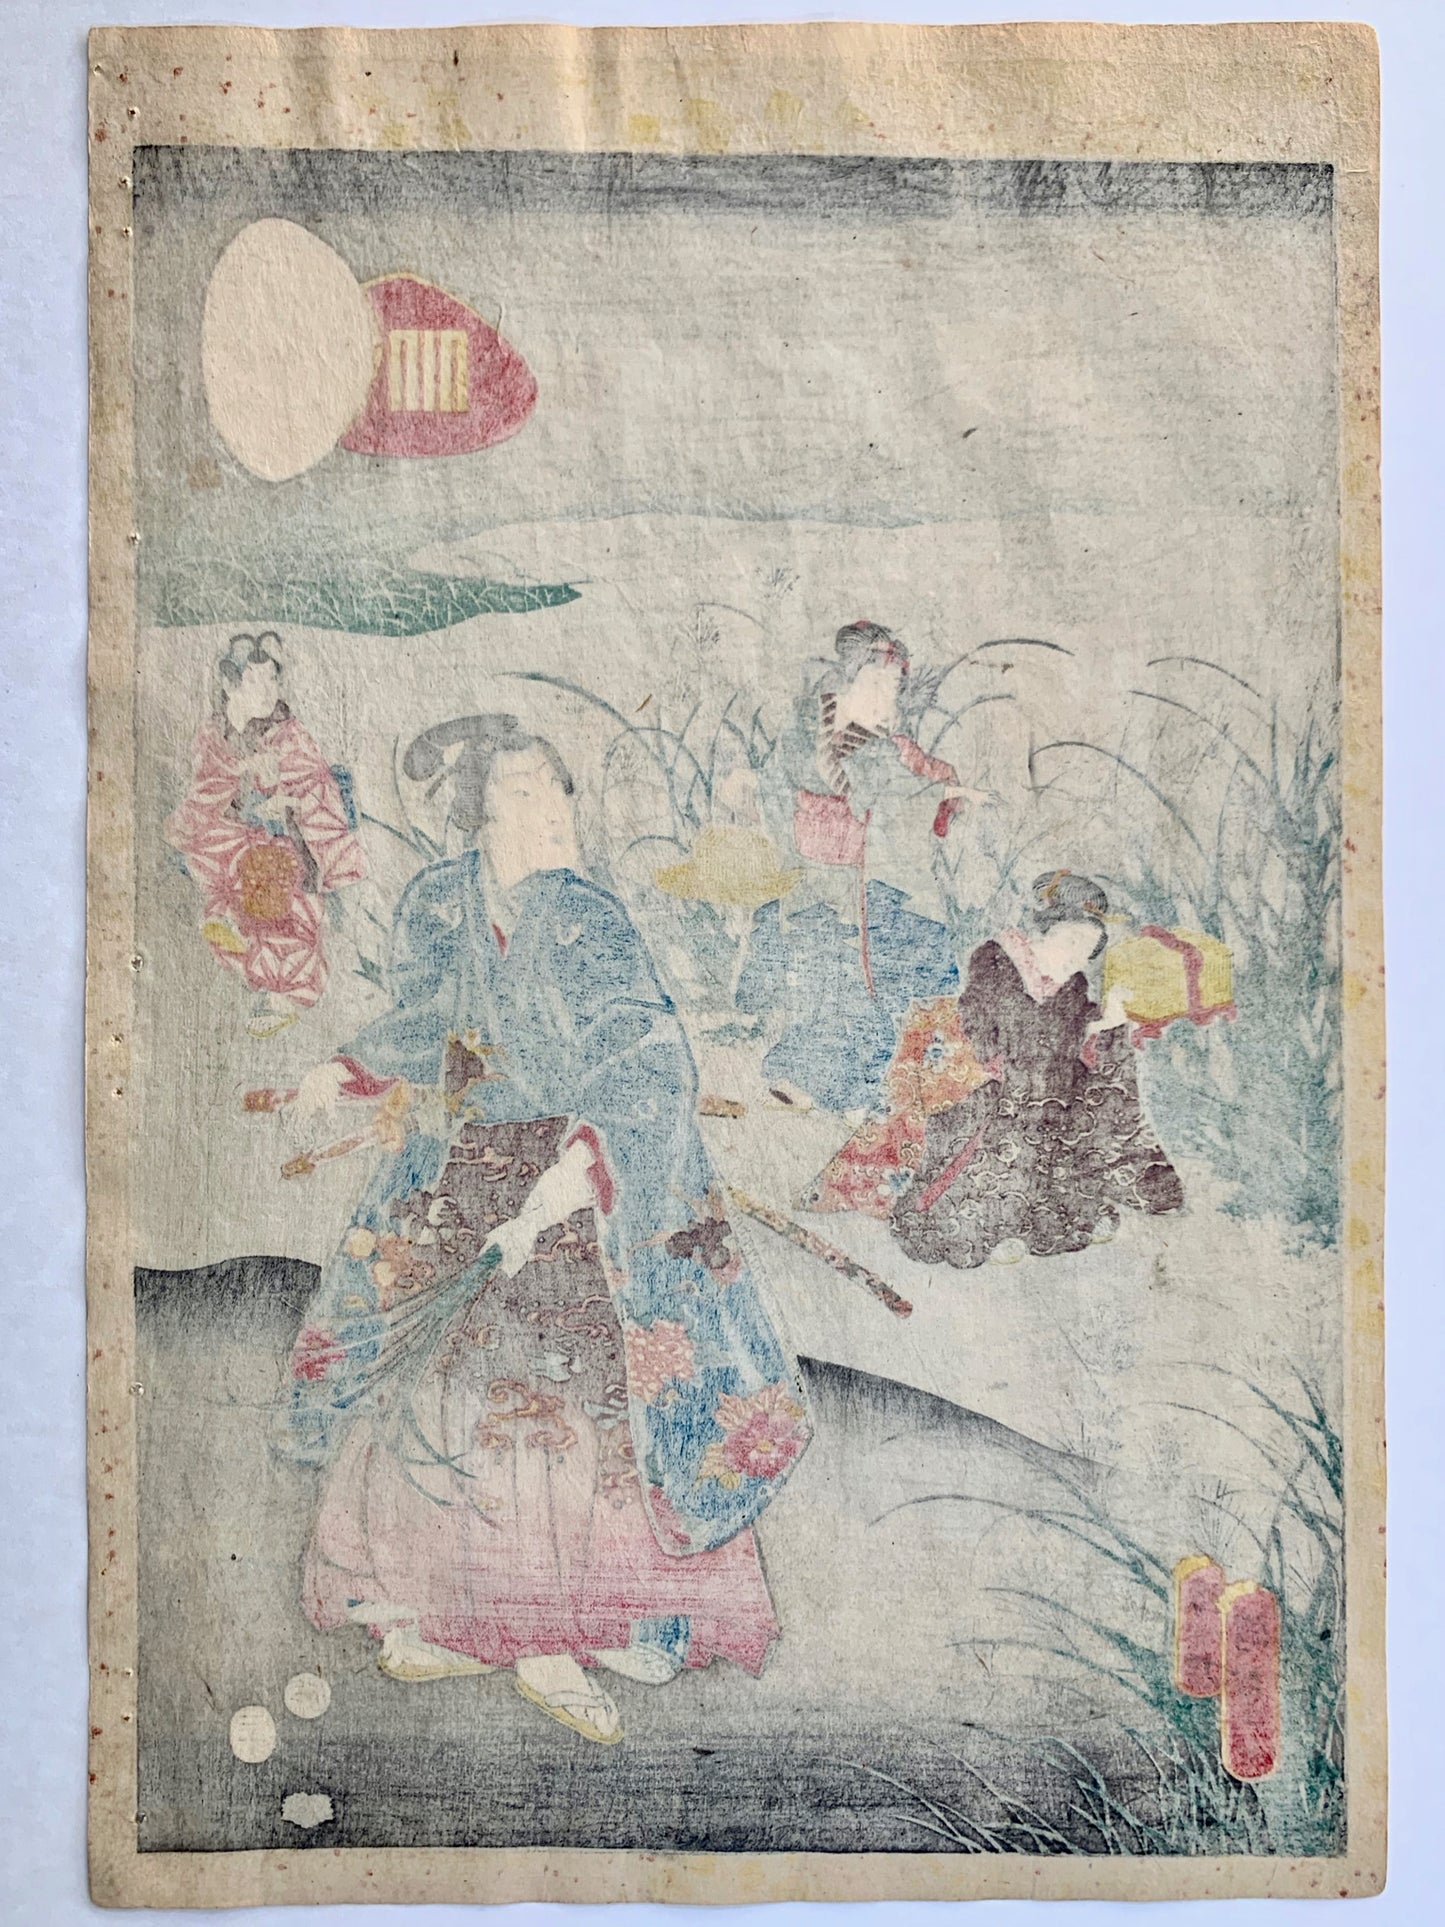 estampe japonaise homme en kimono avec femmes et enfant cueillent des herbes graminées une nuit d'automne, dos de l'estampe